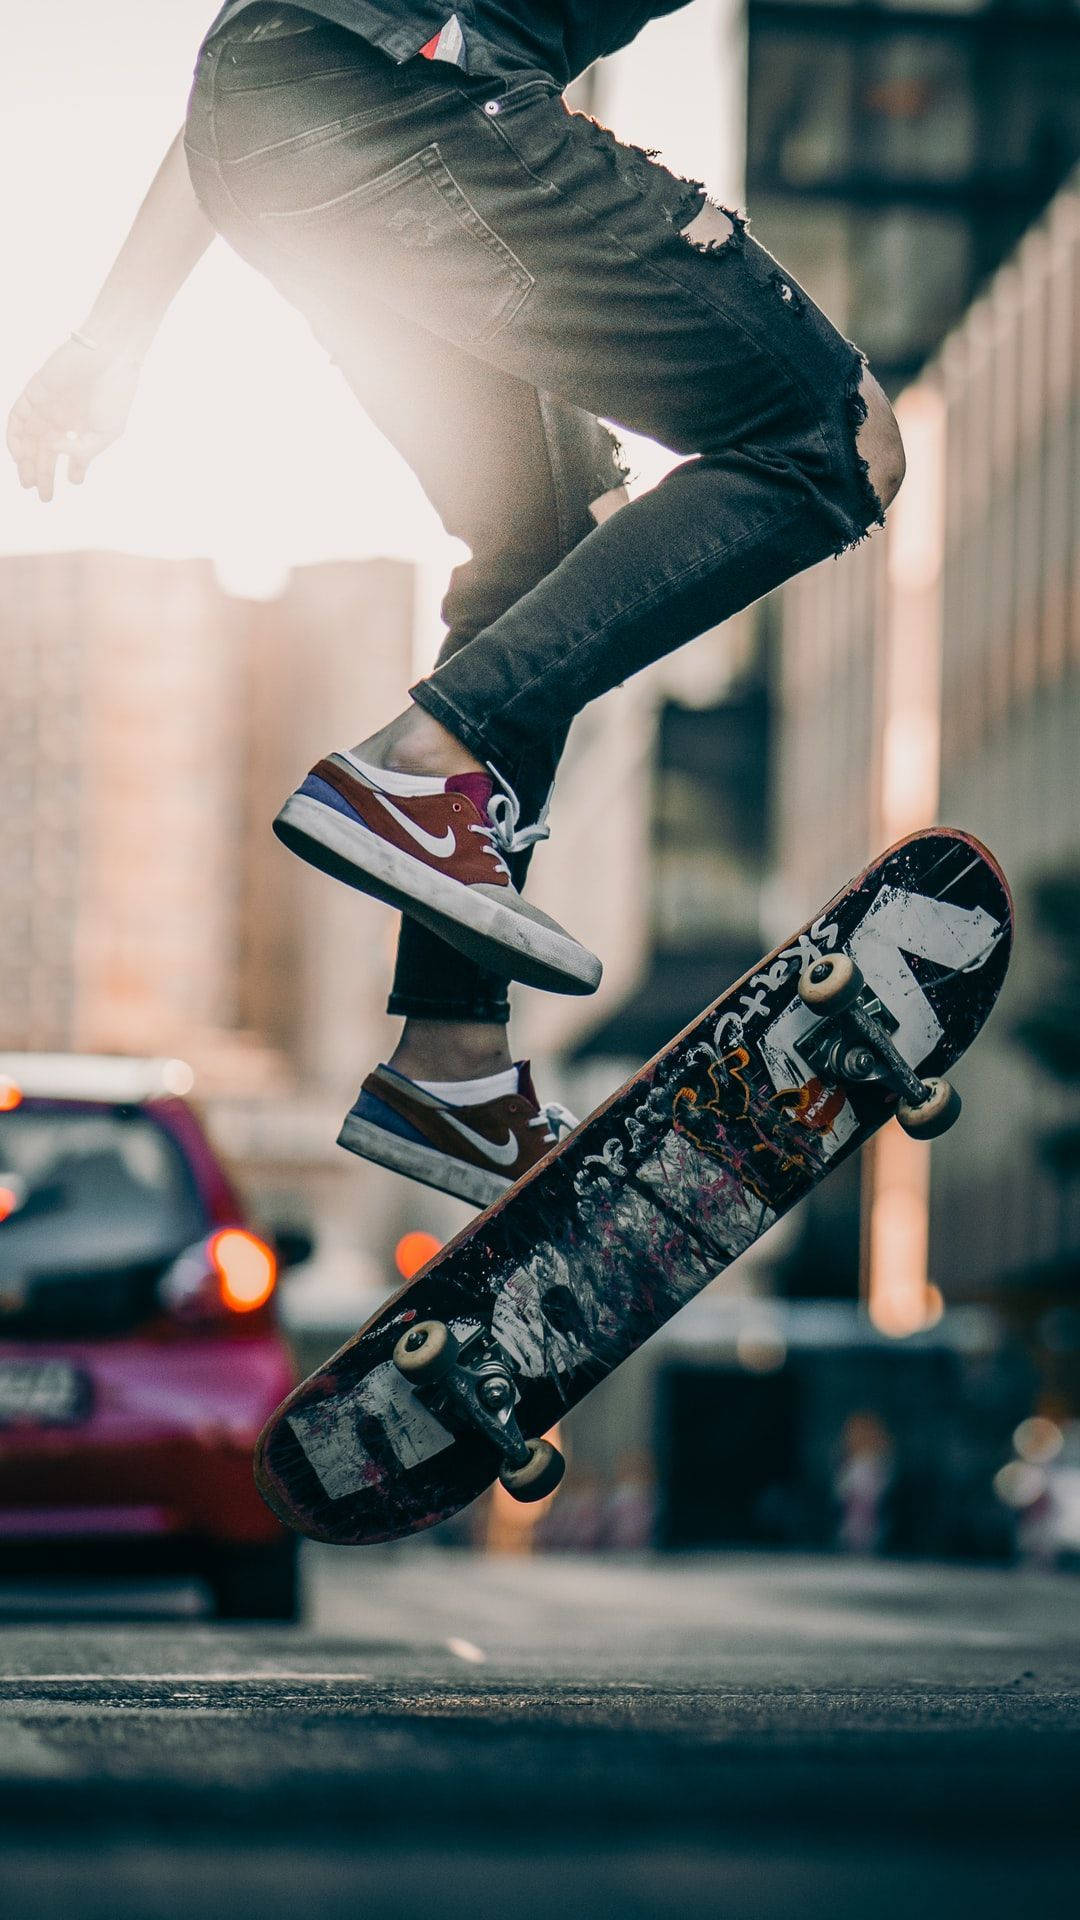 Skateboard Stunt On The Road Skater Aesthetic Wallpaper